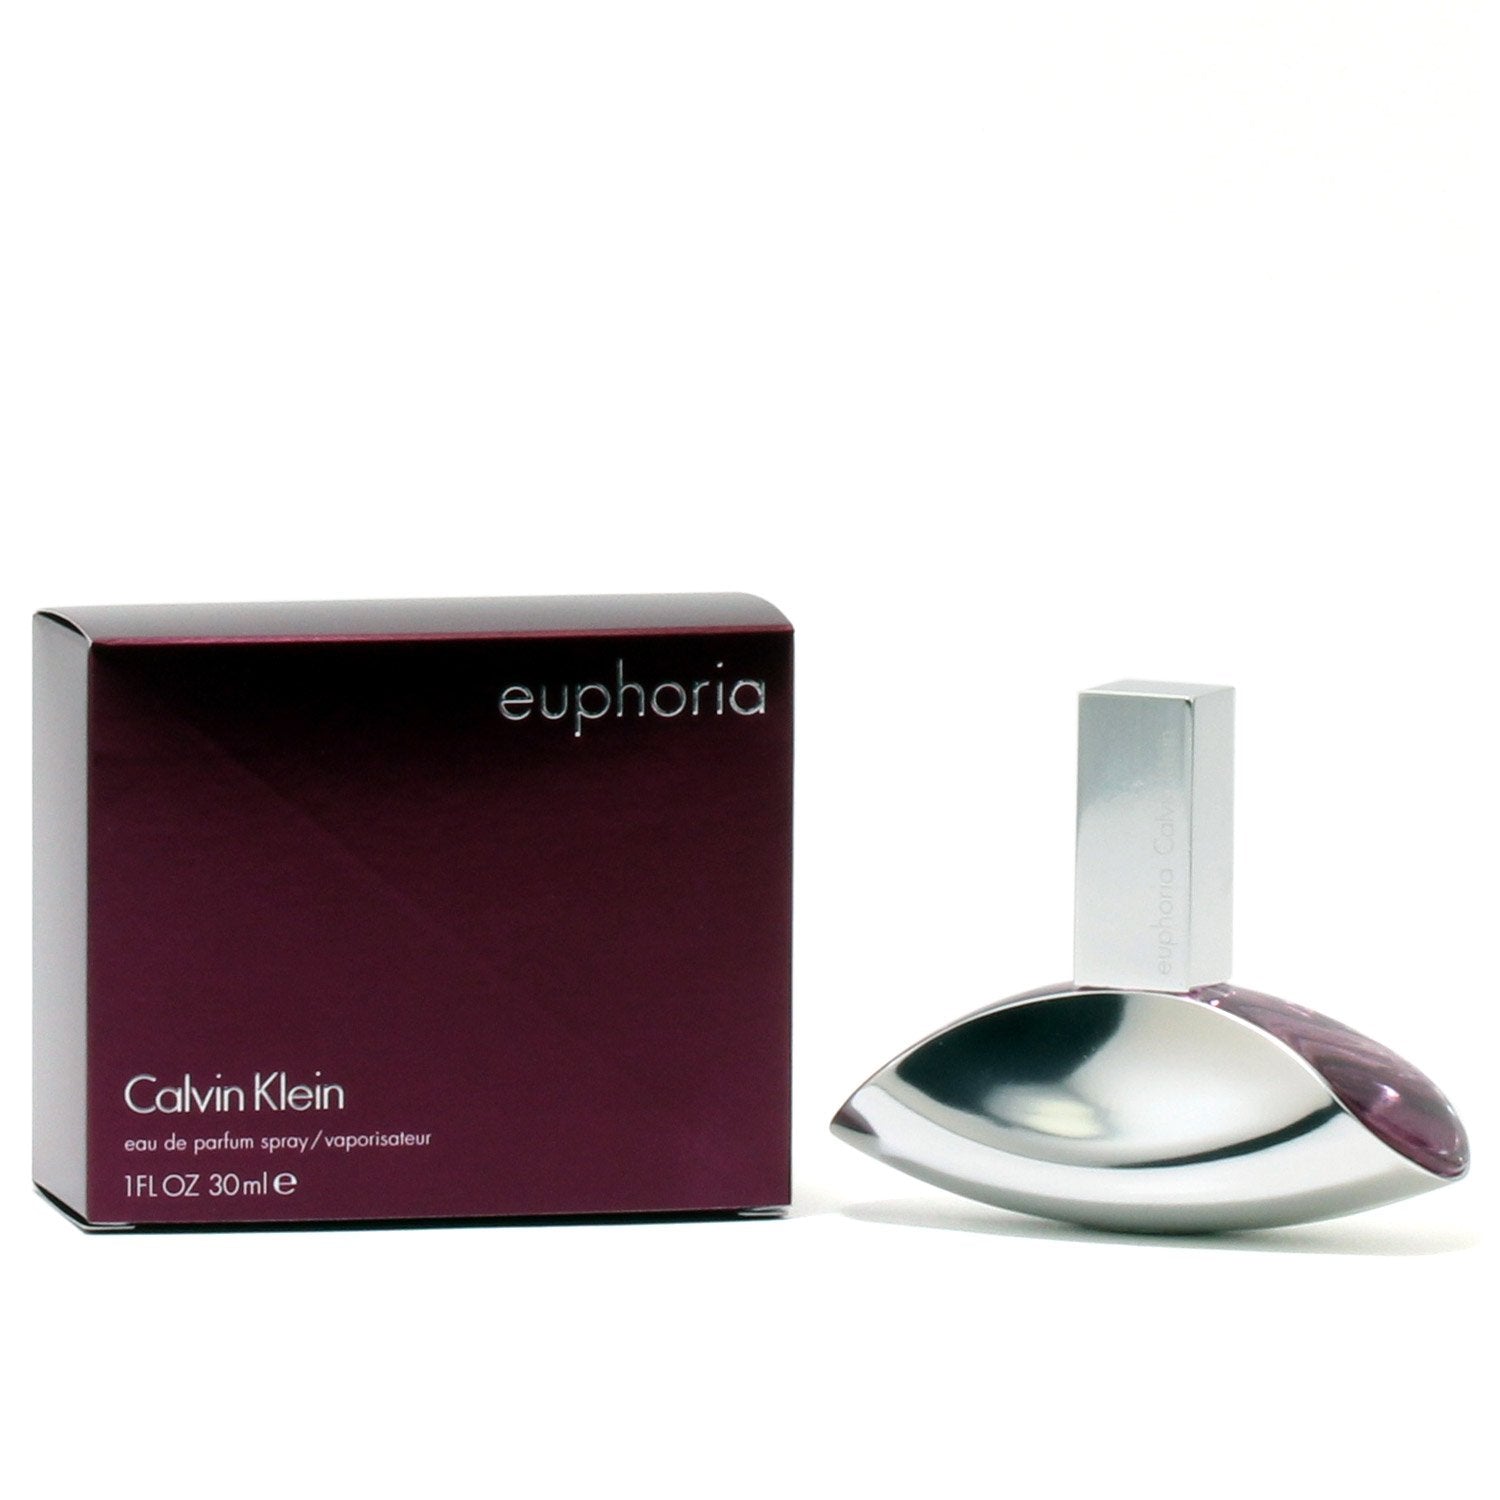 EUPHORIA FOR WOMEN BY CALVIN KLEIN - EAU DE PARFUM SPRAY – Fragrance Room